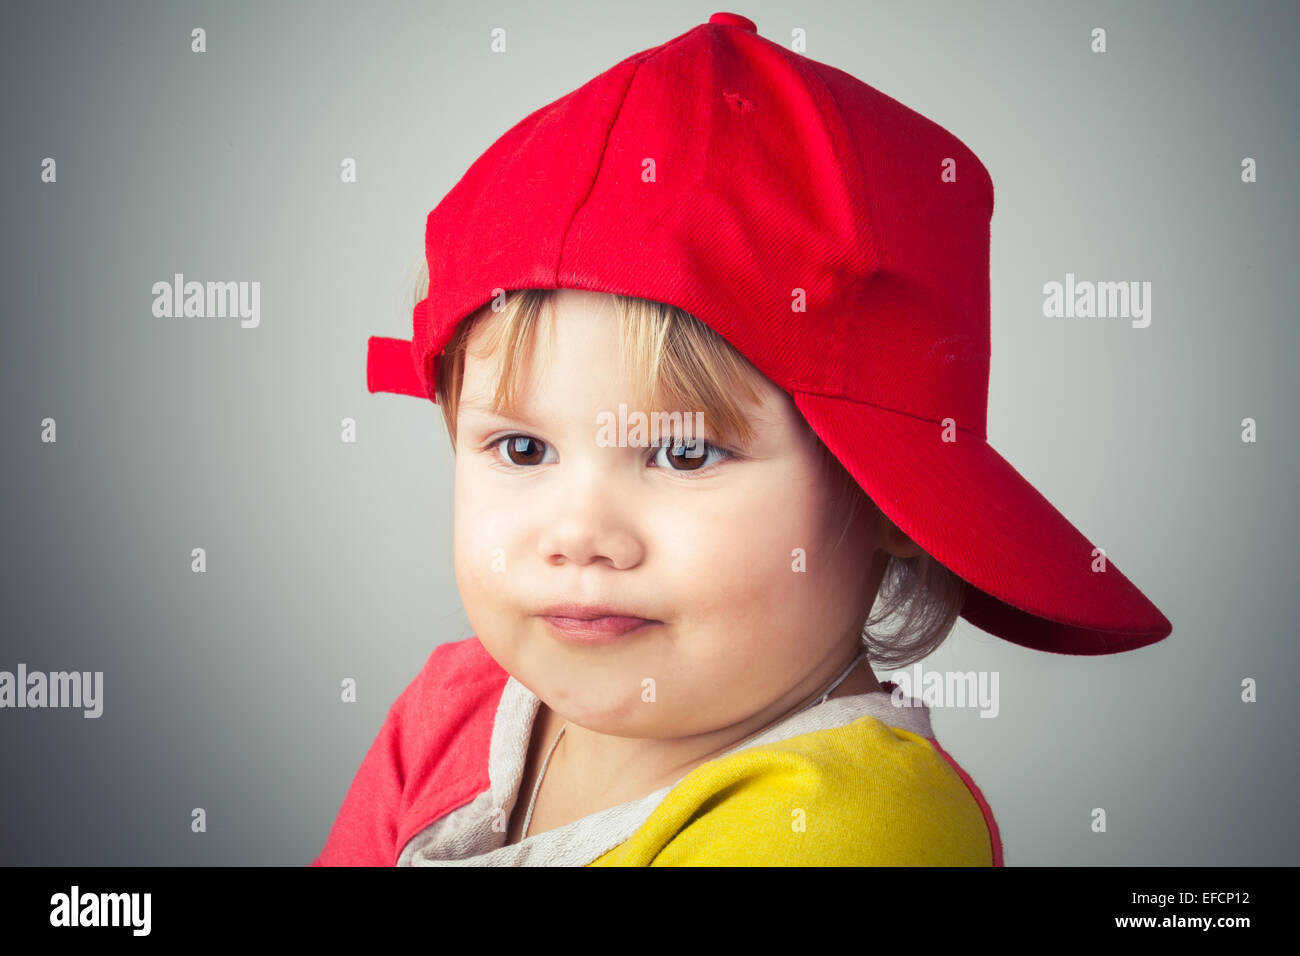 Retrato de estudio de Funny Baby Girl en rojo gorra de béisbol a lo largo de pared gris de fondo. Estilo Vintage, Efecto Filtro de fotos Foto de stock